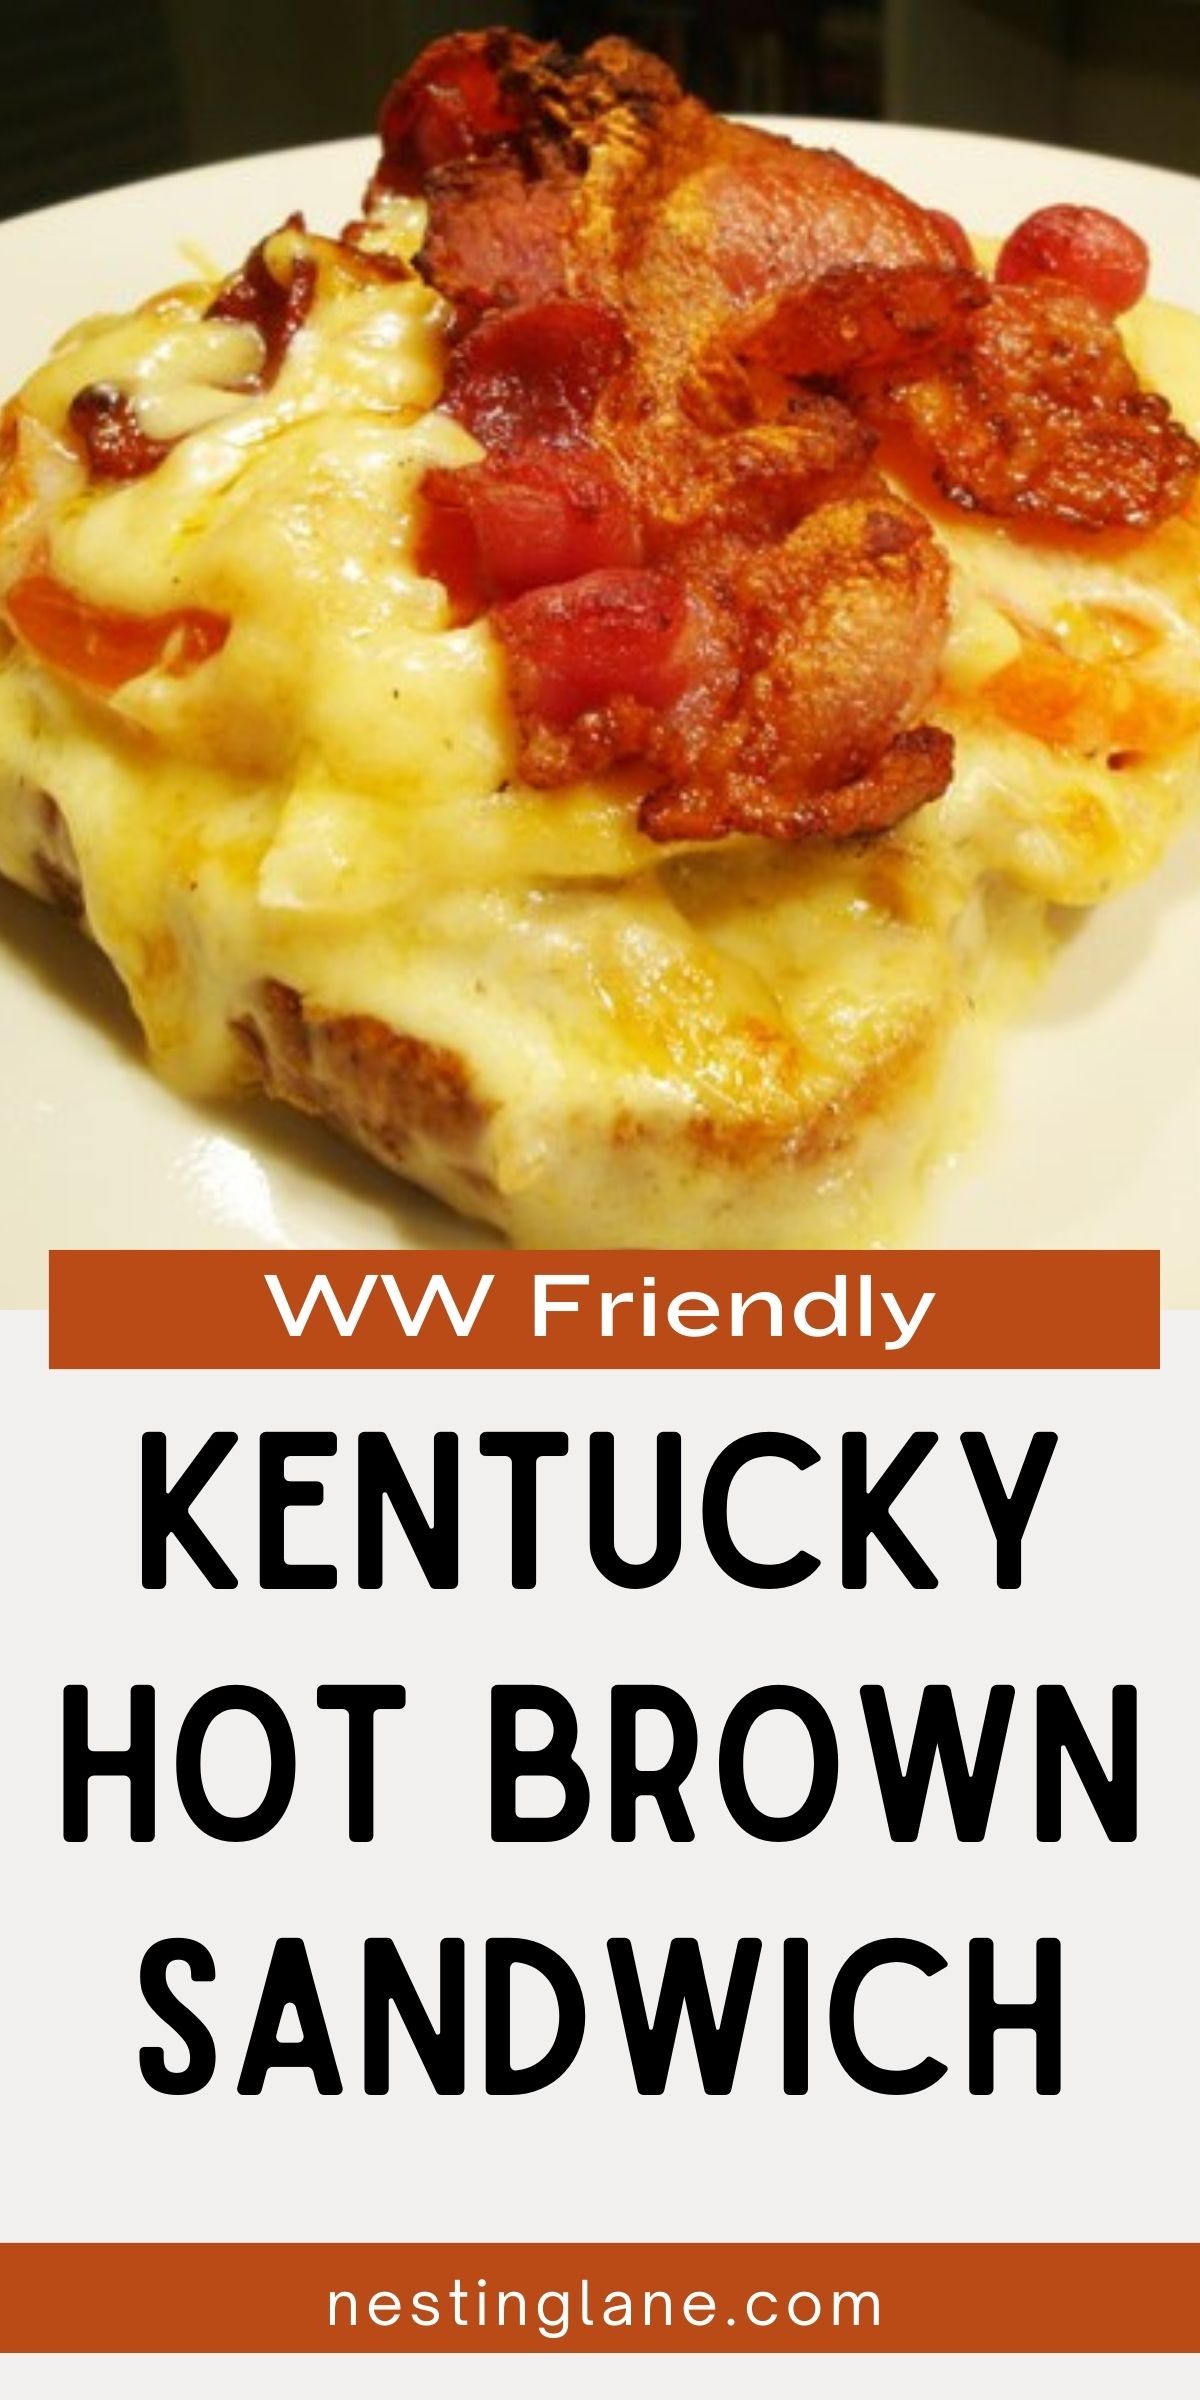 Kentucky Hot Brown Sandwich Graphic.